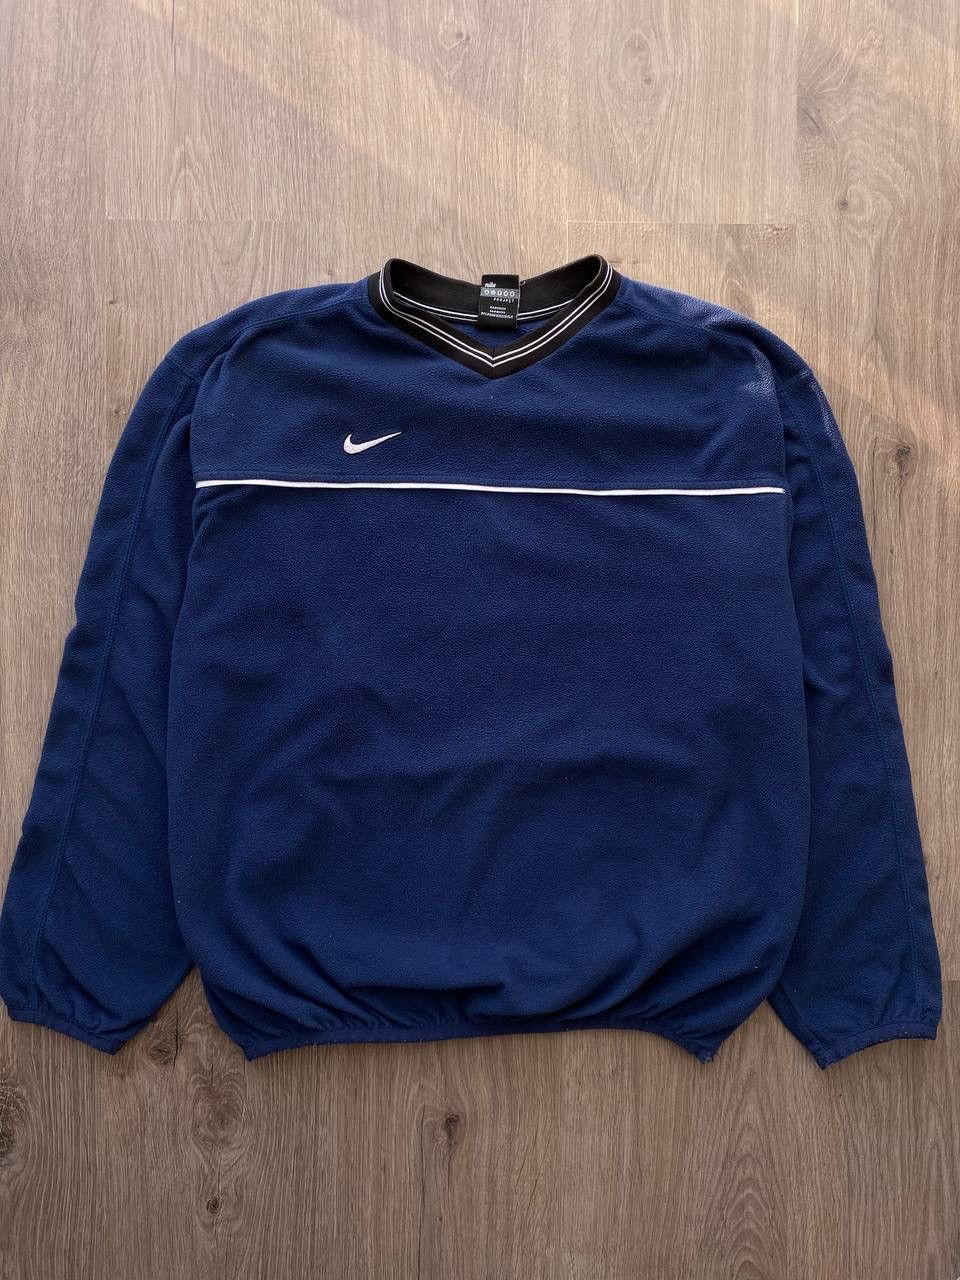 Pre-owned Nike X Nike Acg Vintage Sweatshirt Fleece Nike Teddy Y2k In Blue